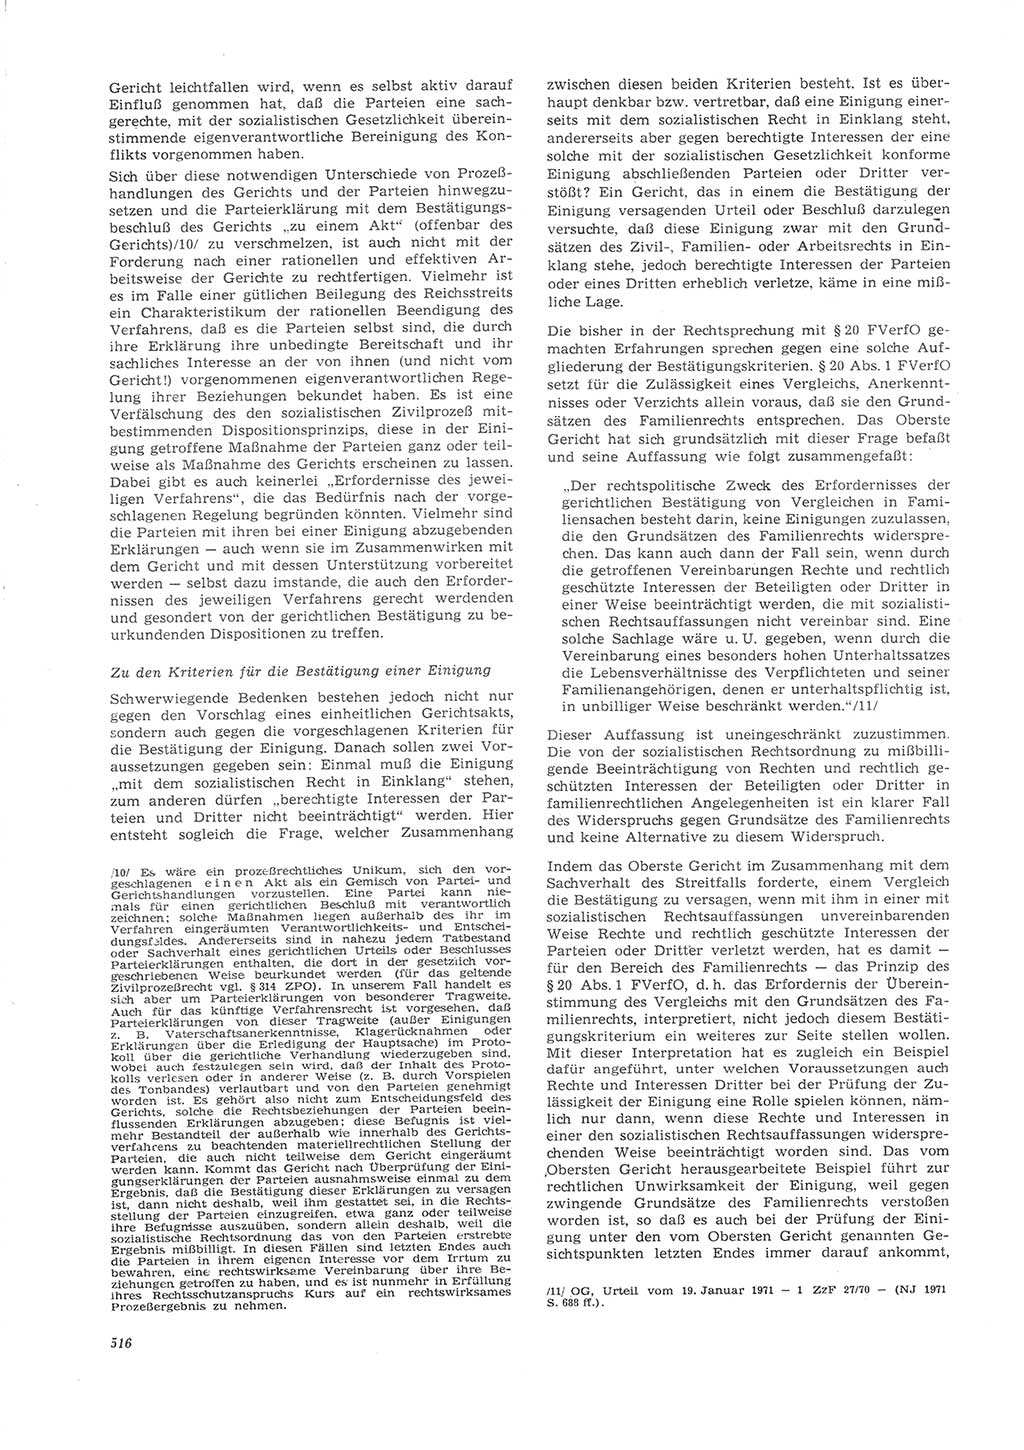 Neue Justiz (NJ), Zeitschrift für Recht und Rechtswissenschaft [Deutsche Demokratische Republik (DDR)], 26. Jahrgang 1972, Seite 516 (NJ DDR 1972, S. 516)